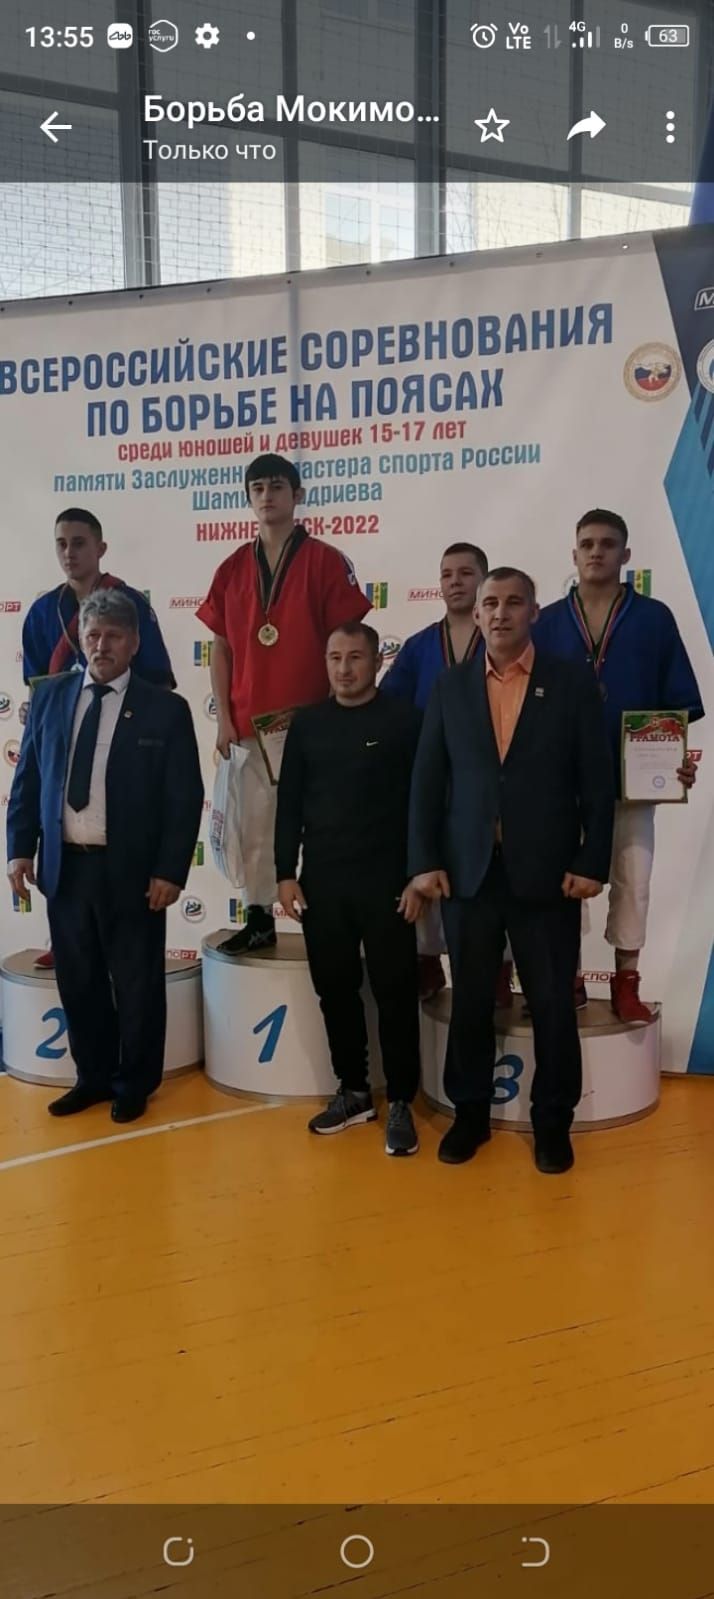 Рузиль Мокимов занял 3 место на Всероссийском турнире по борьбе на поясах